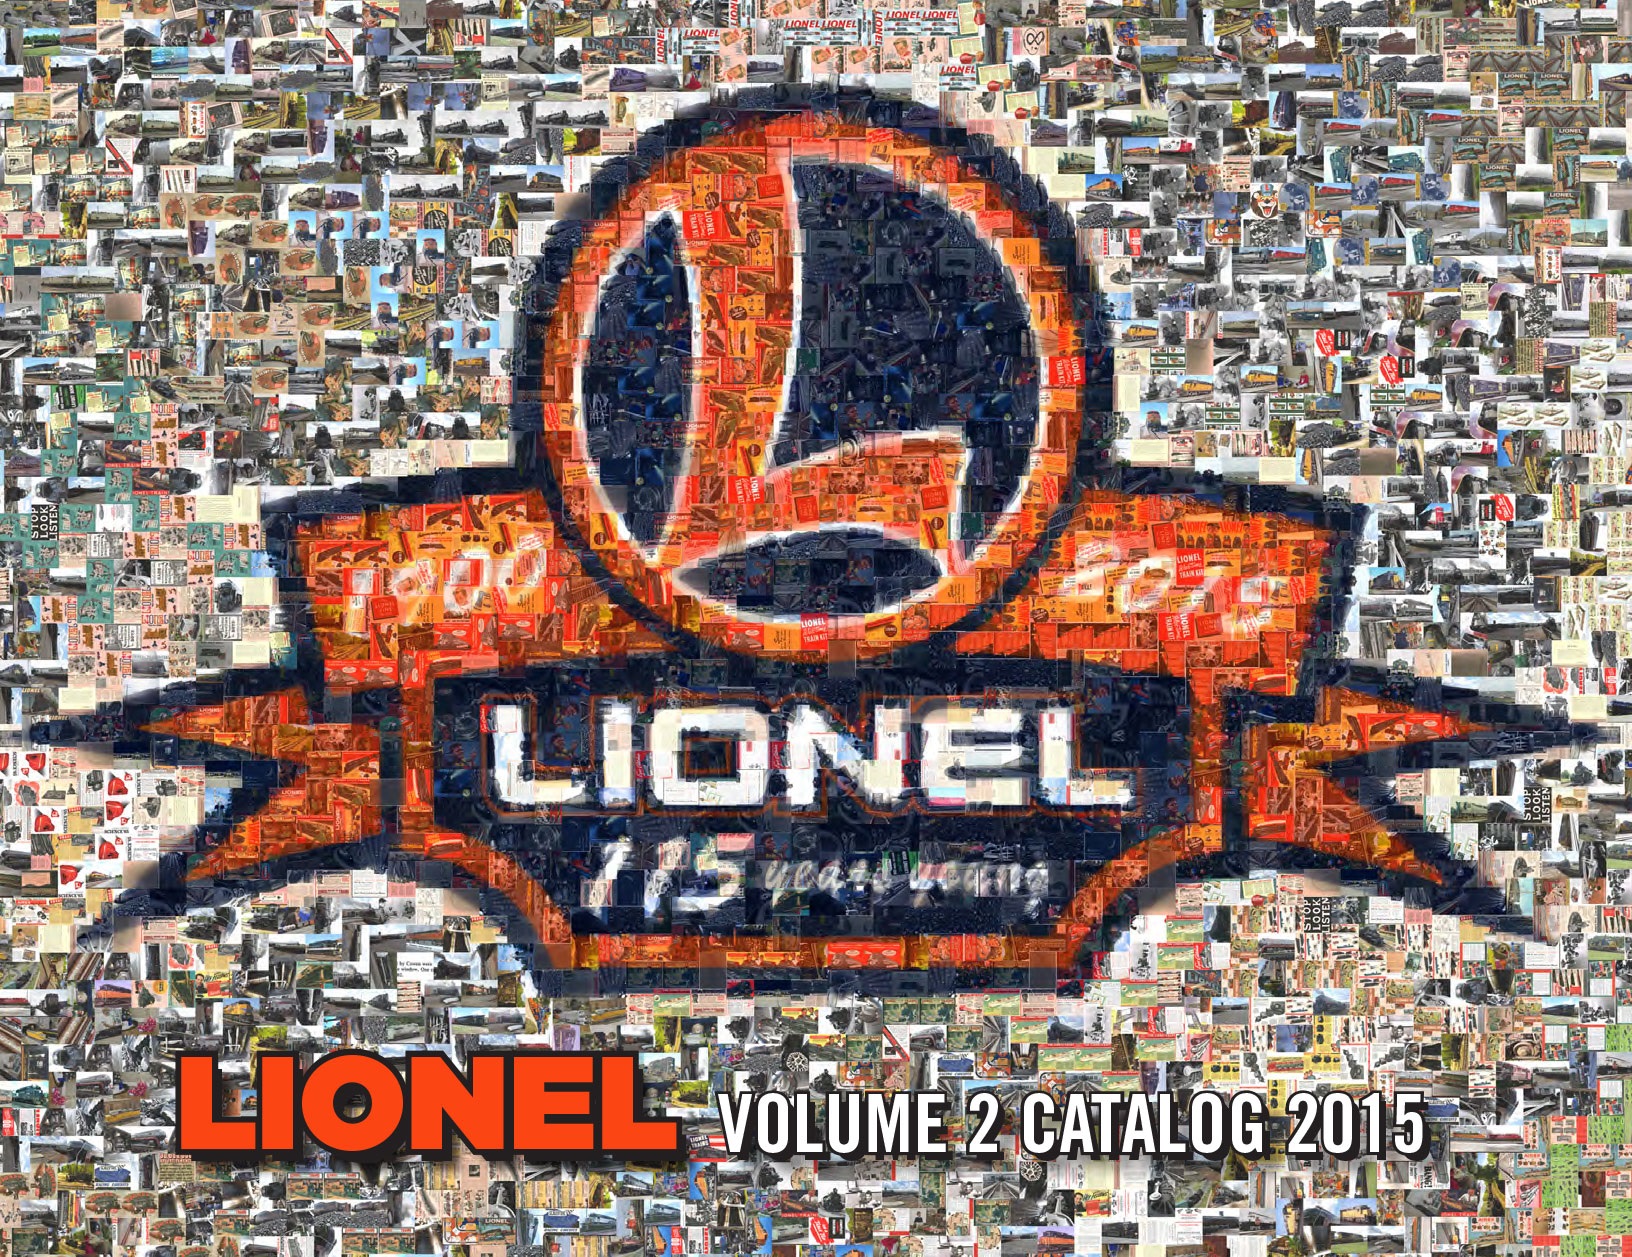 Lionel Catalogs - Volume 2 2015